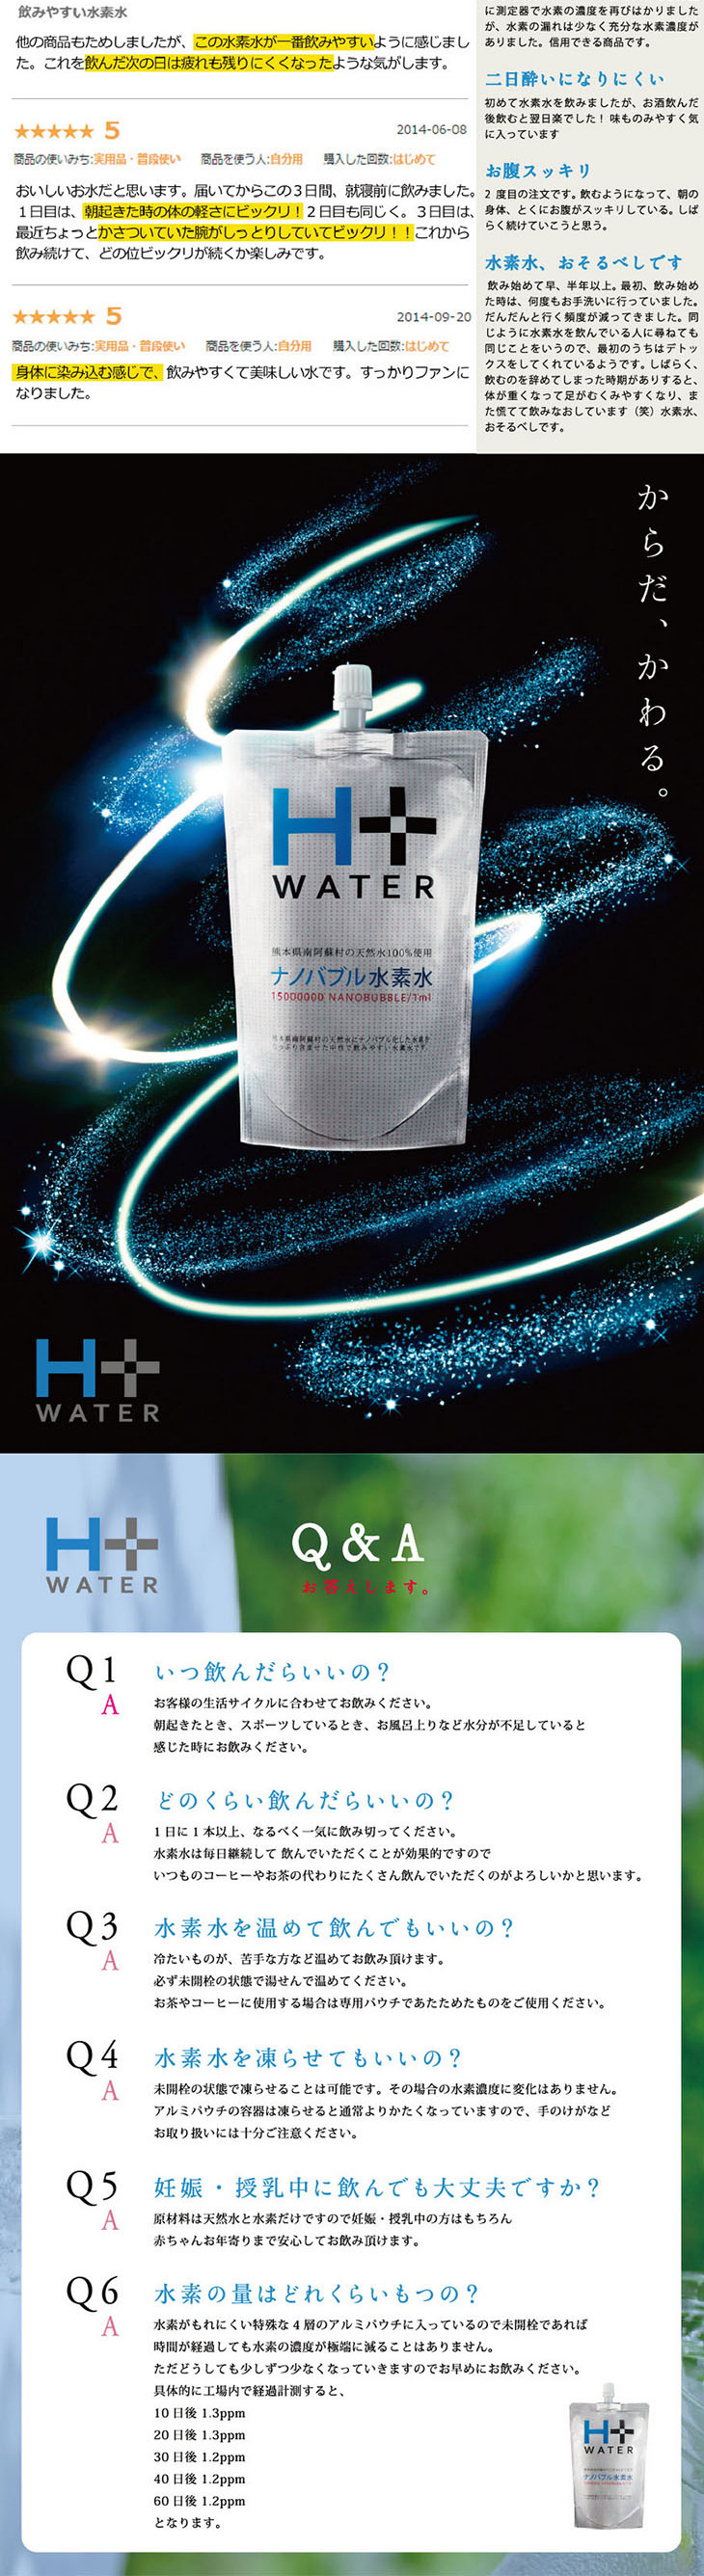 南ASOの水素水 H+WATER_pc_2